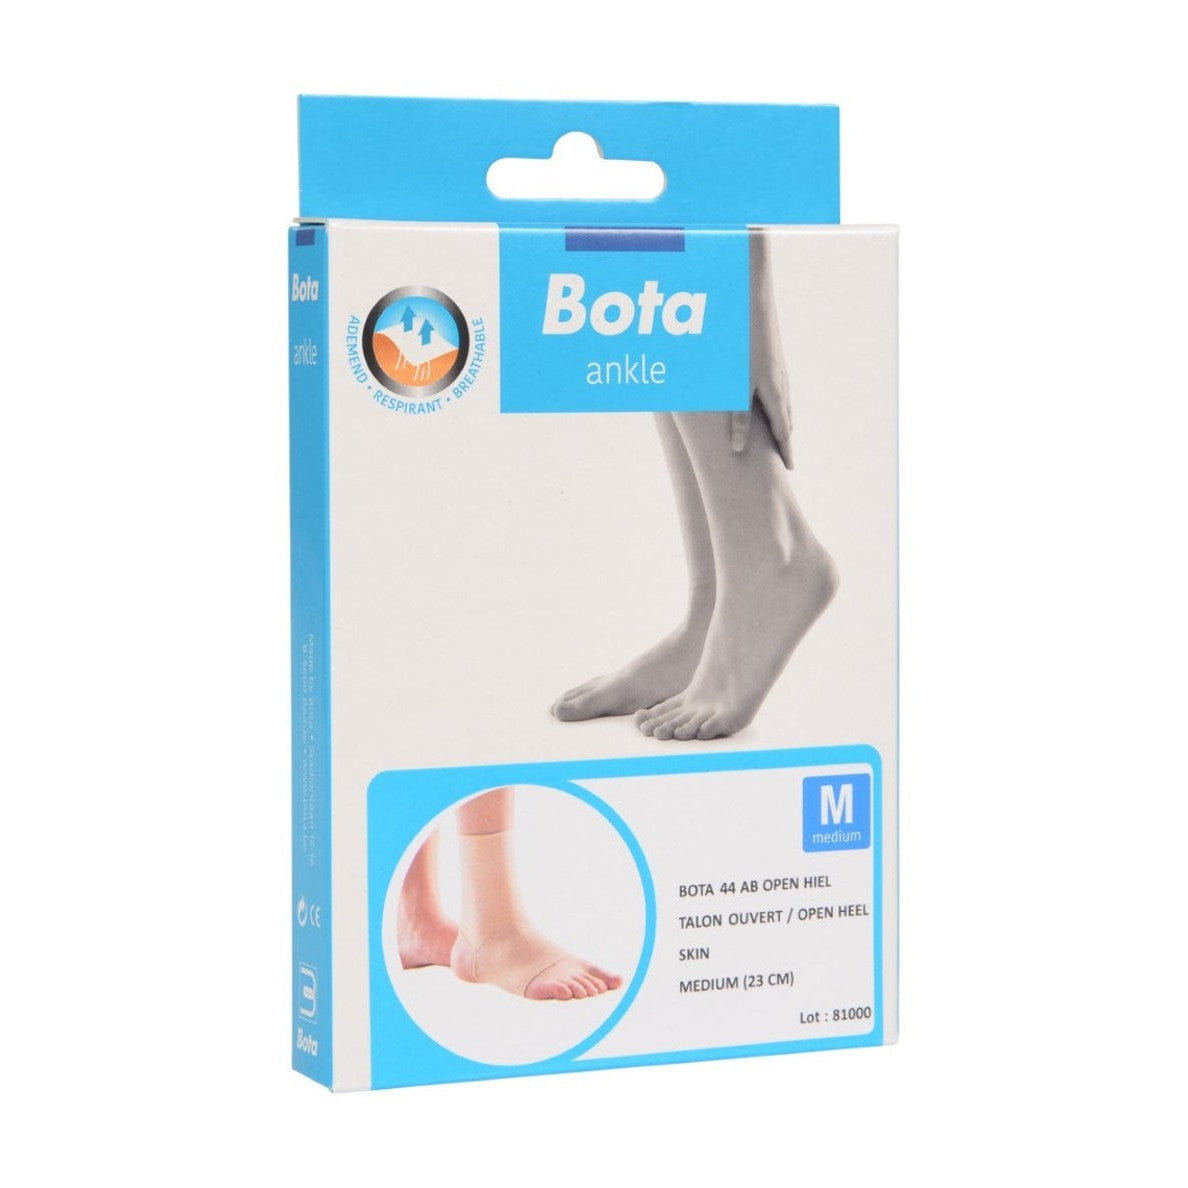 Bota 44 ab with open heel